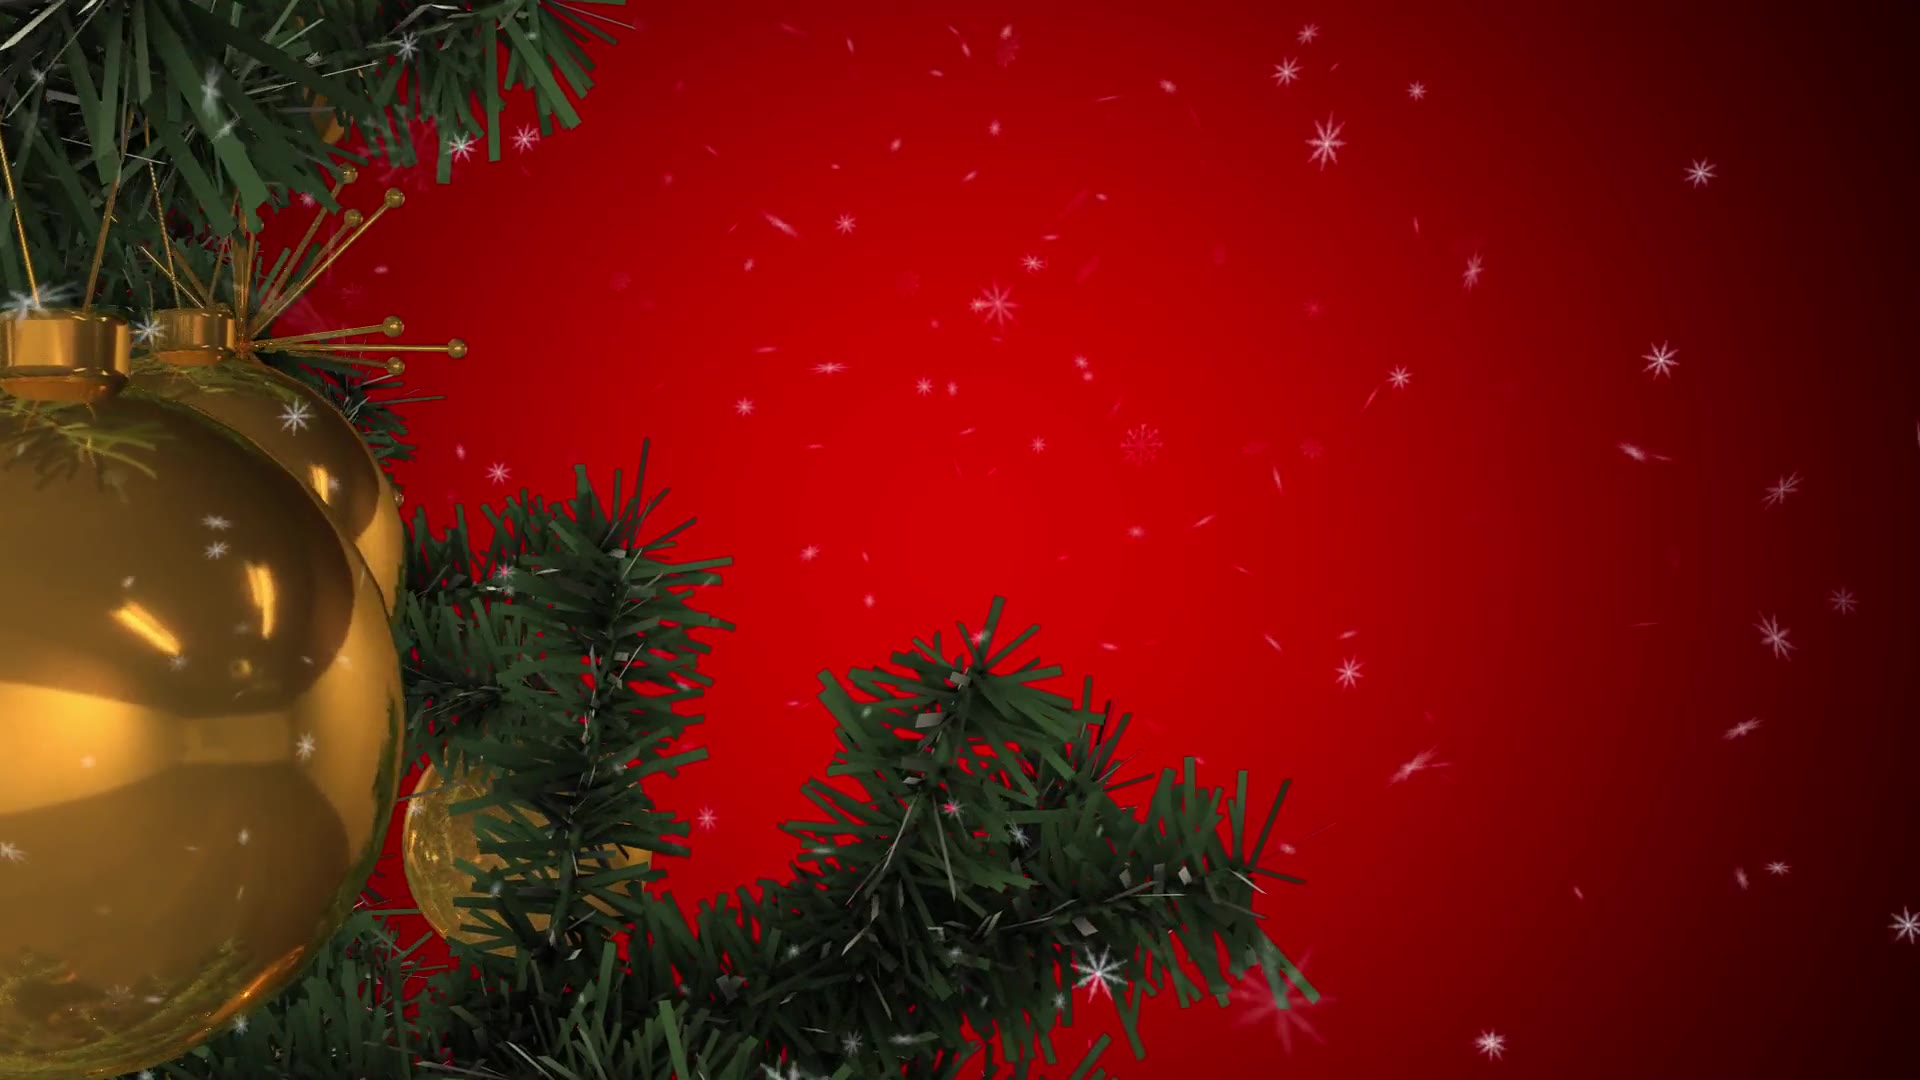 Rotating Christmas Tree Videohive 22935986 Motion Graphics Image 5